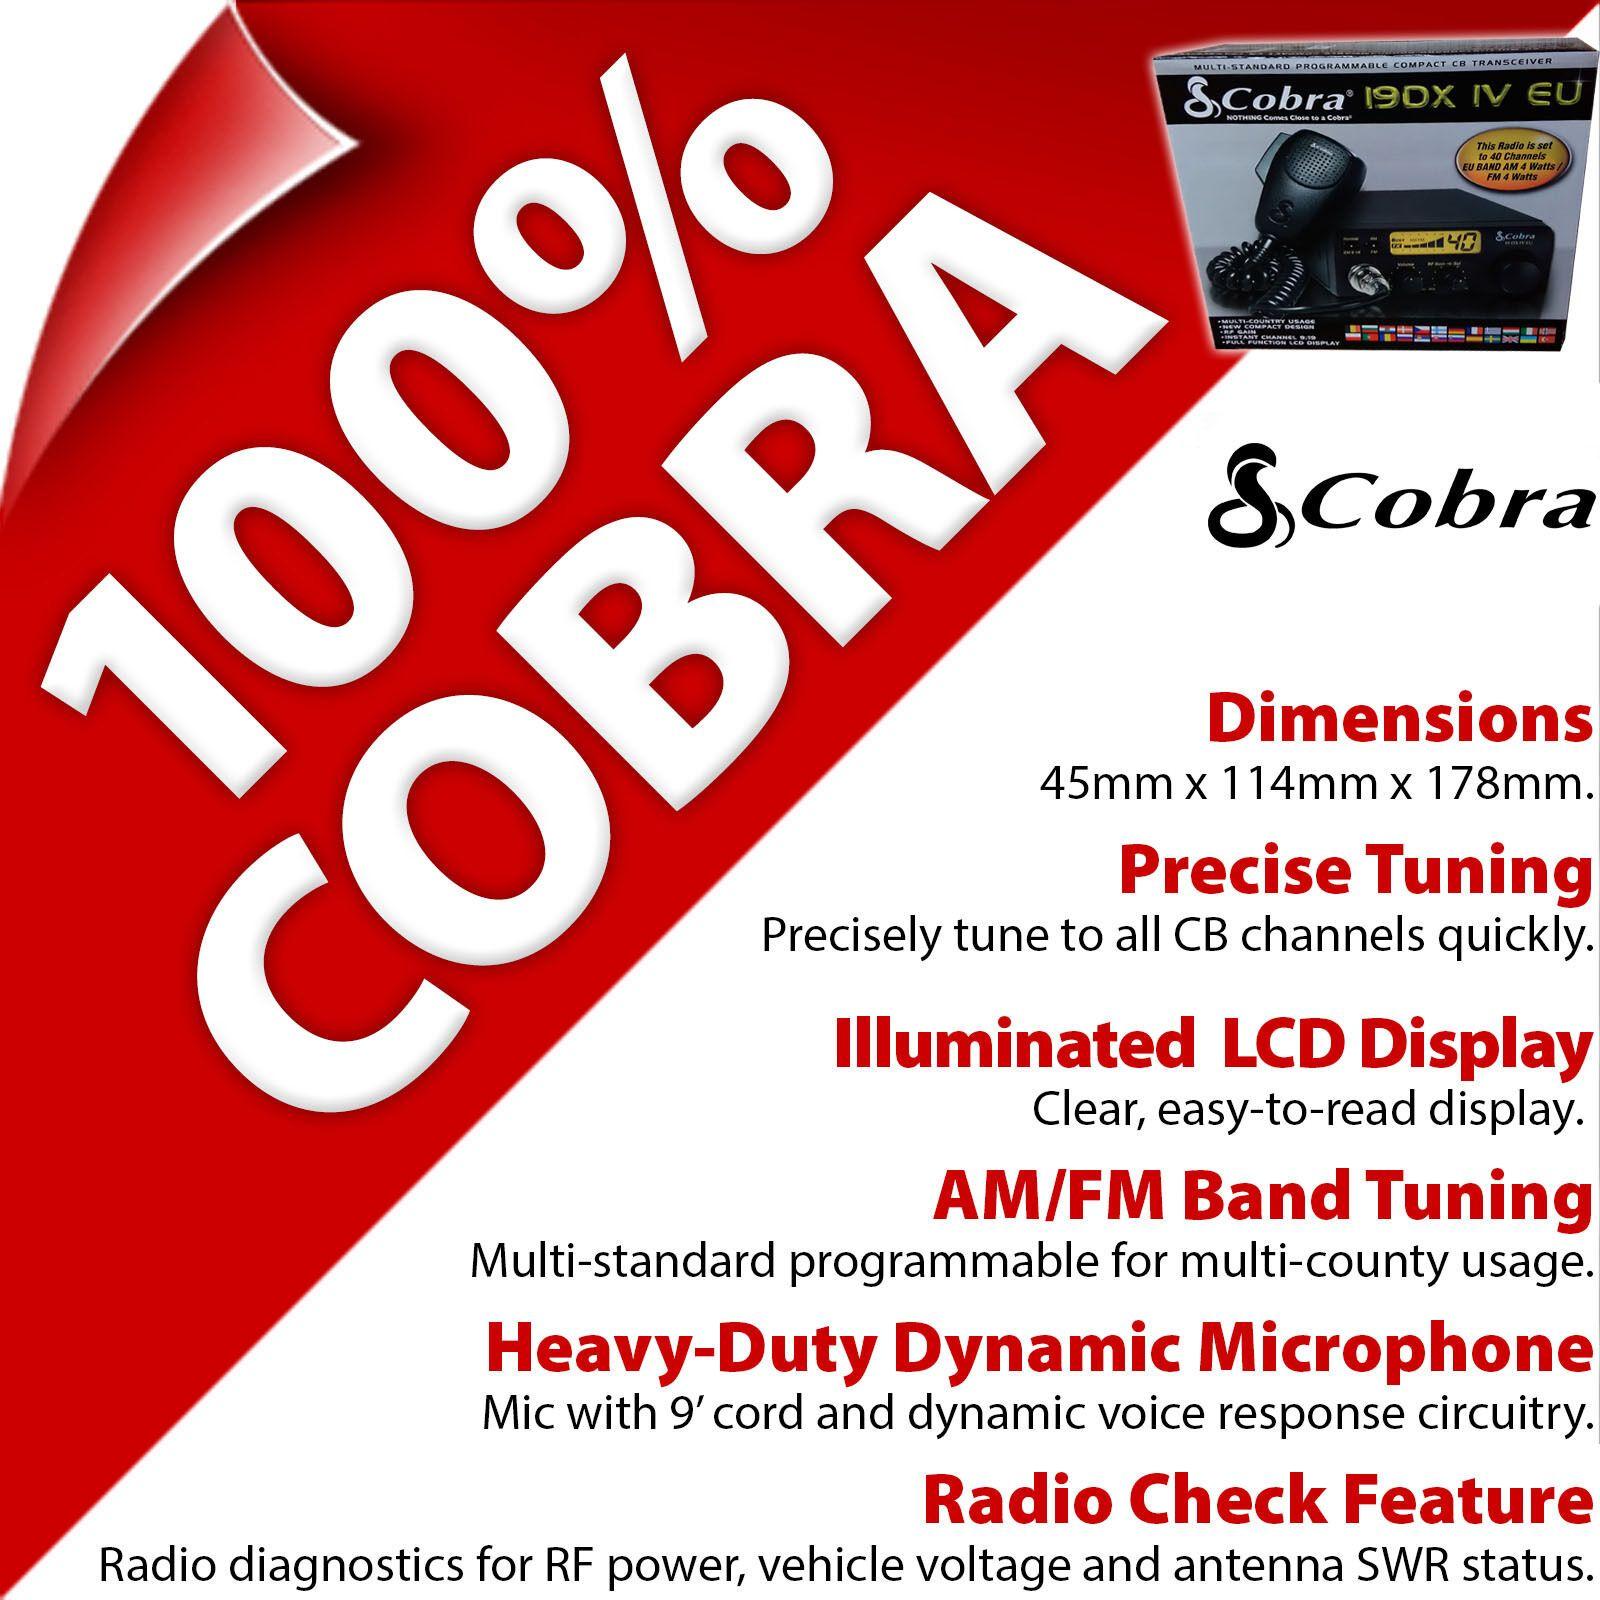 Cobra Radio Logo - Cobra 19 DX IV EU CB Radio | eBay